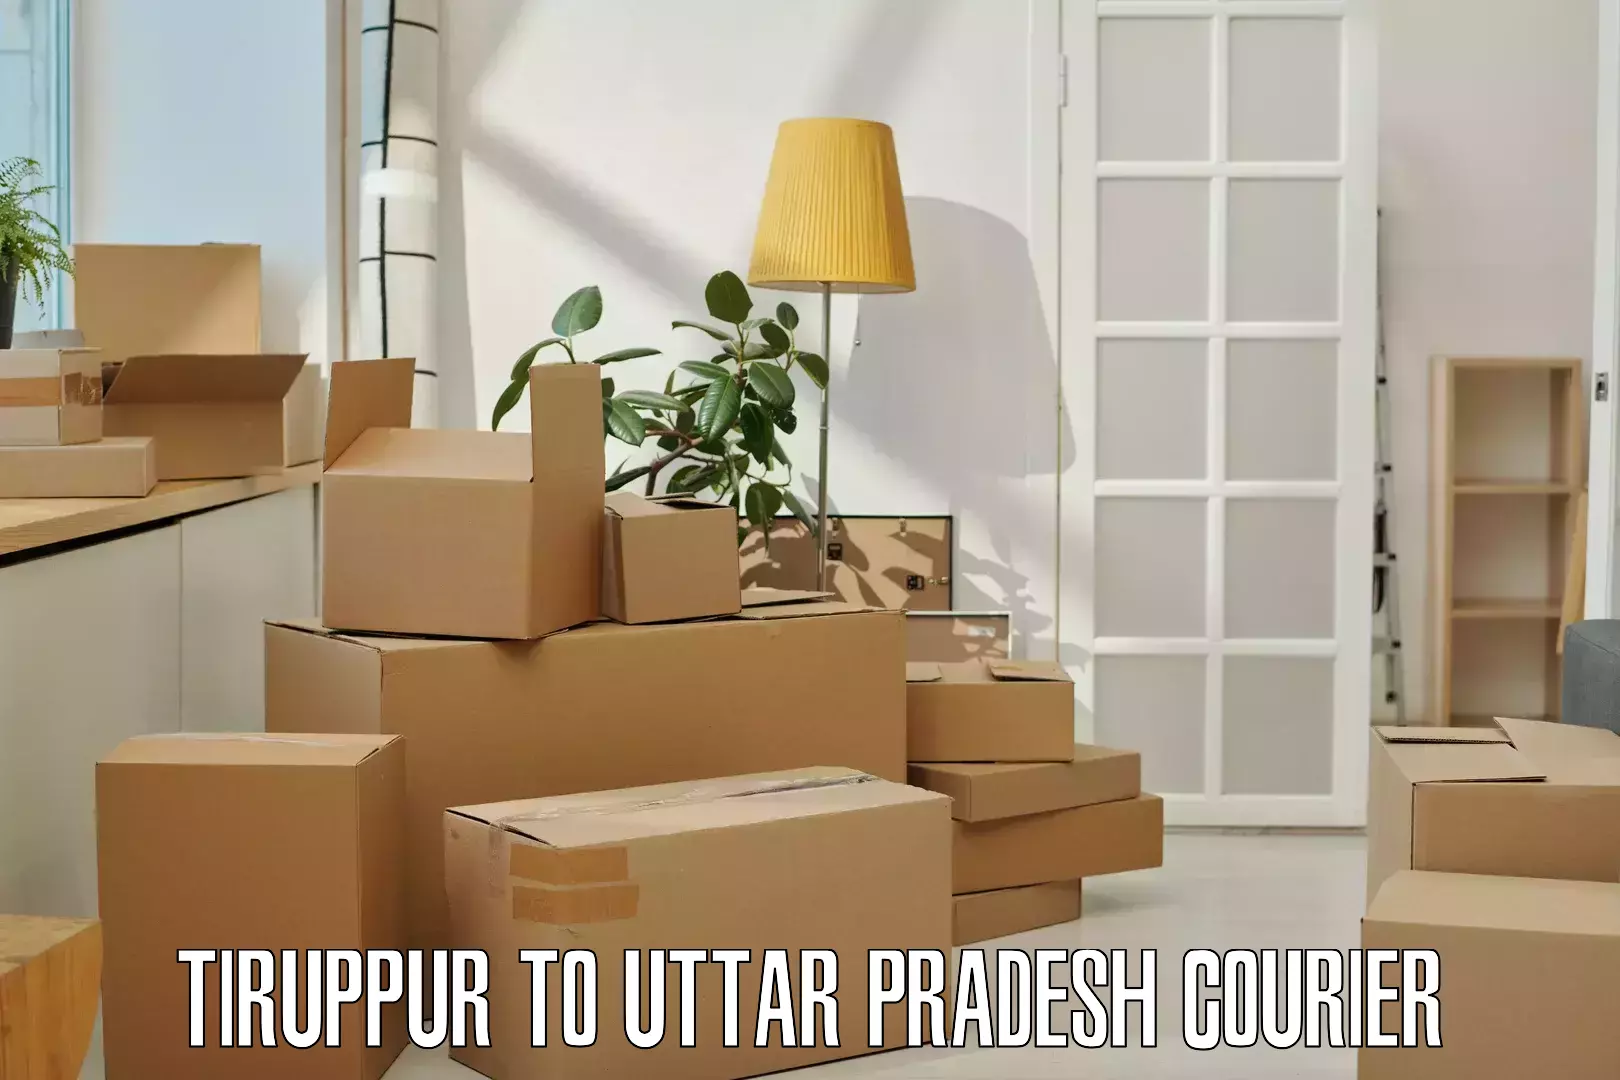 Full-service courier options Tiruppur to Kurebhar